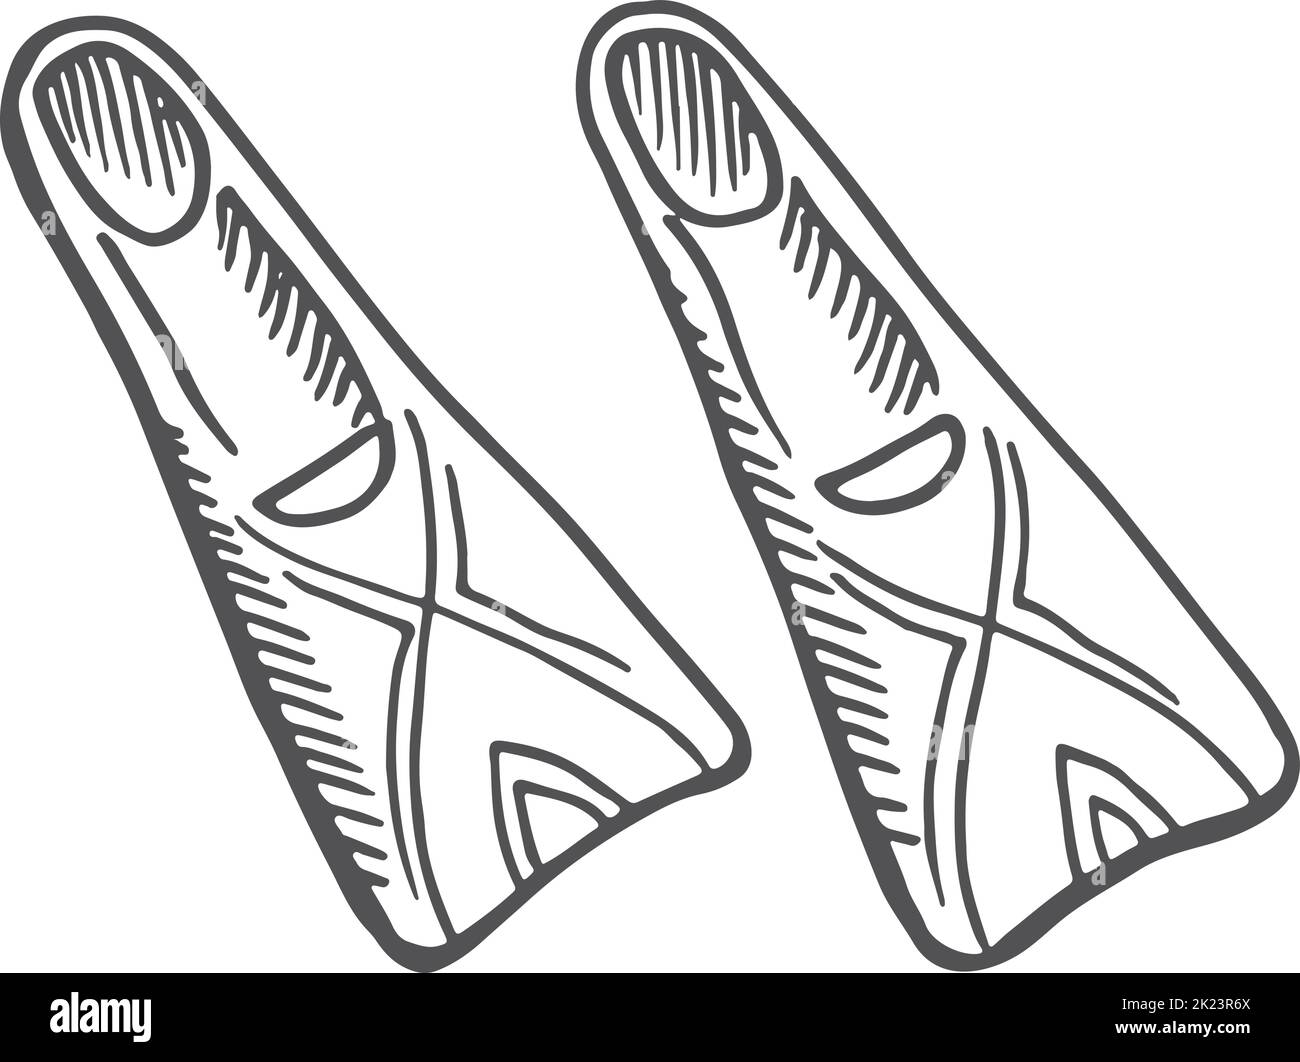 Flippers-Symbol. Handgezeichnetes Unterwasserschwimmsymbol Stock Vektor